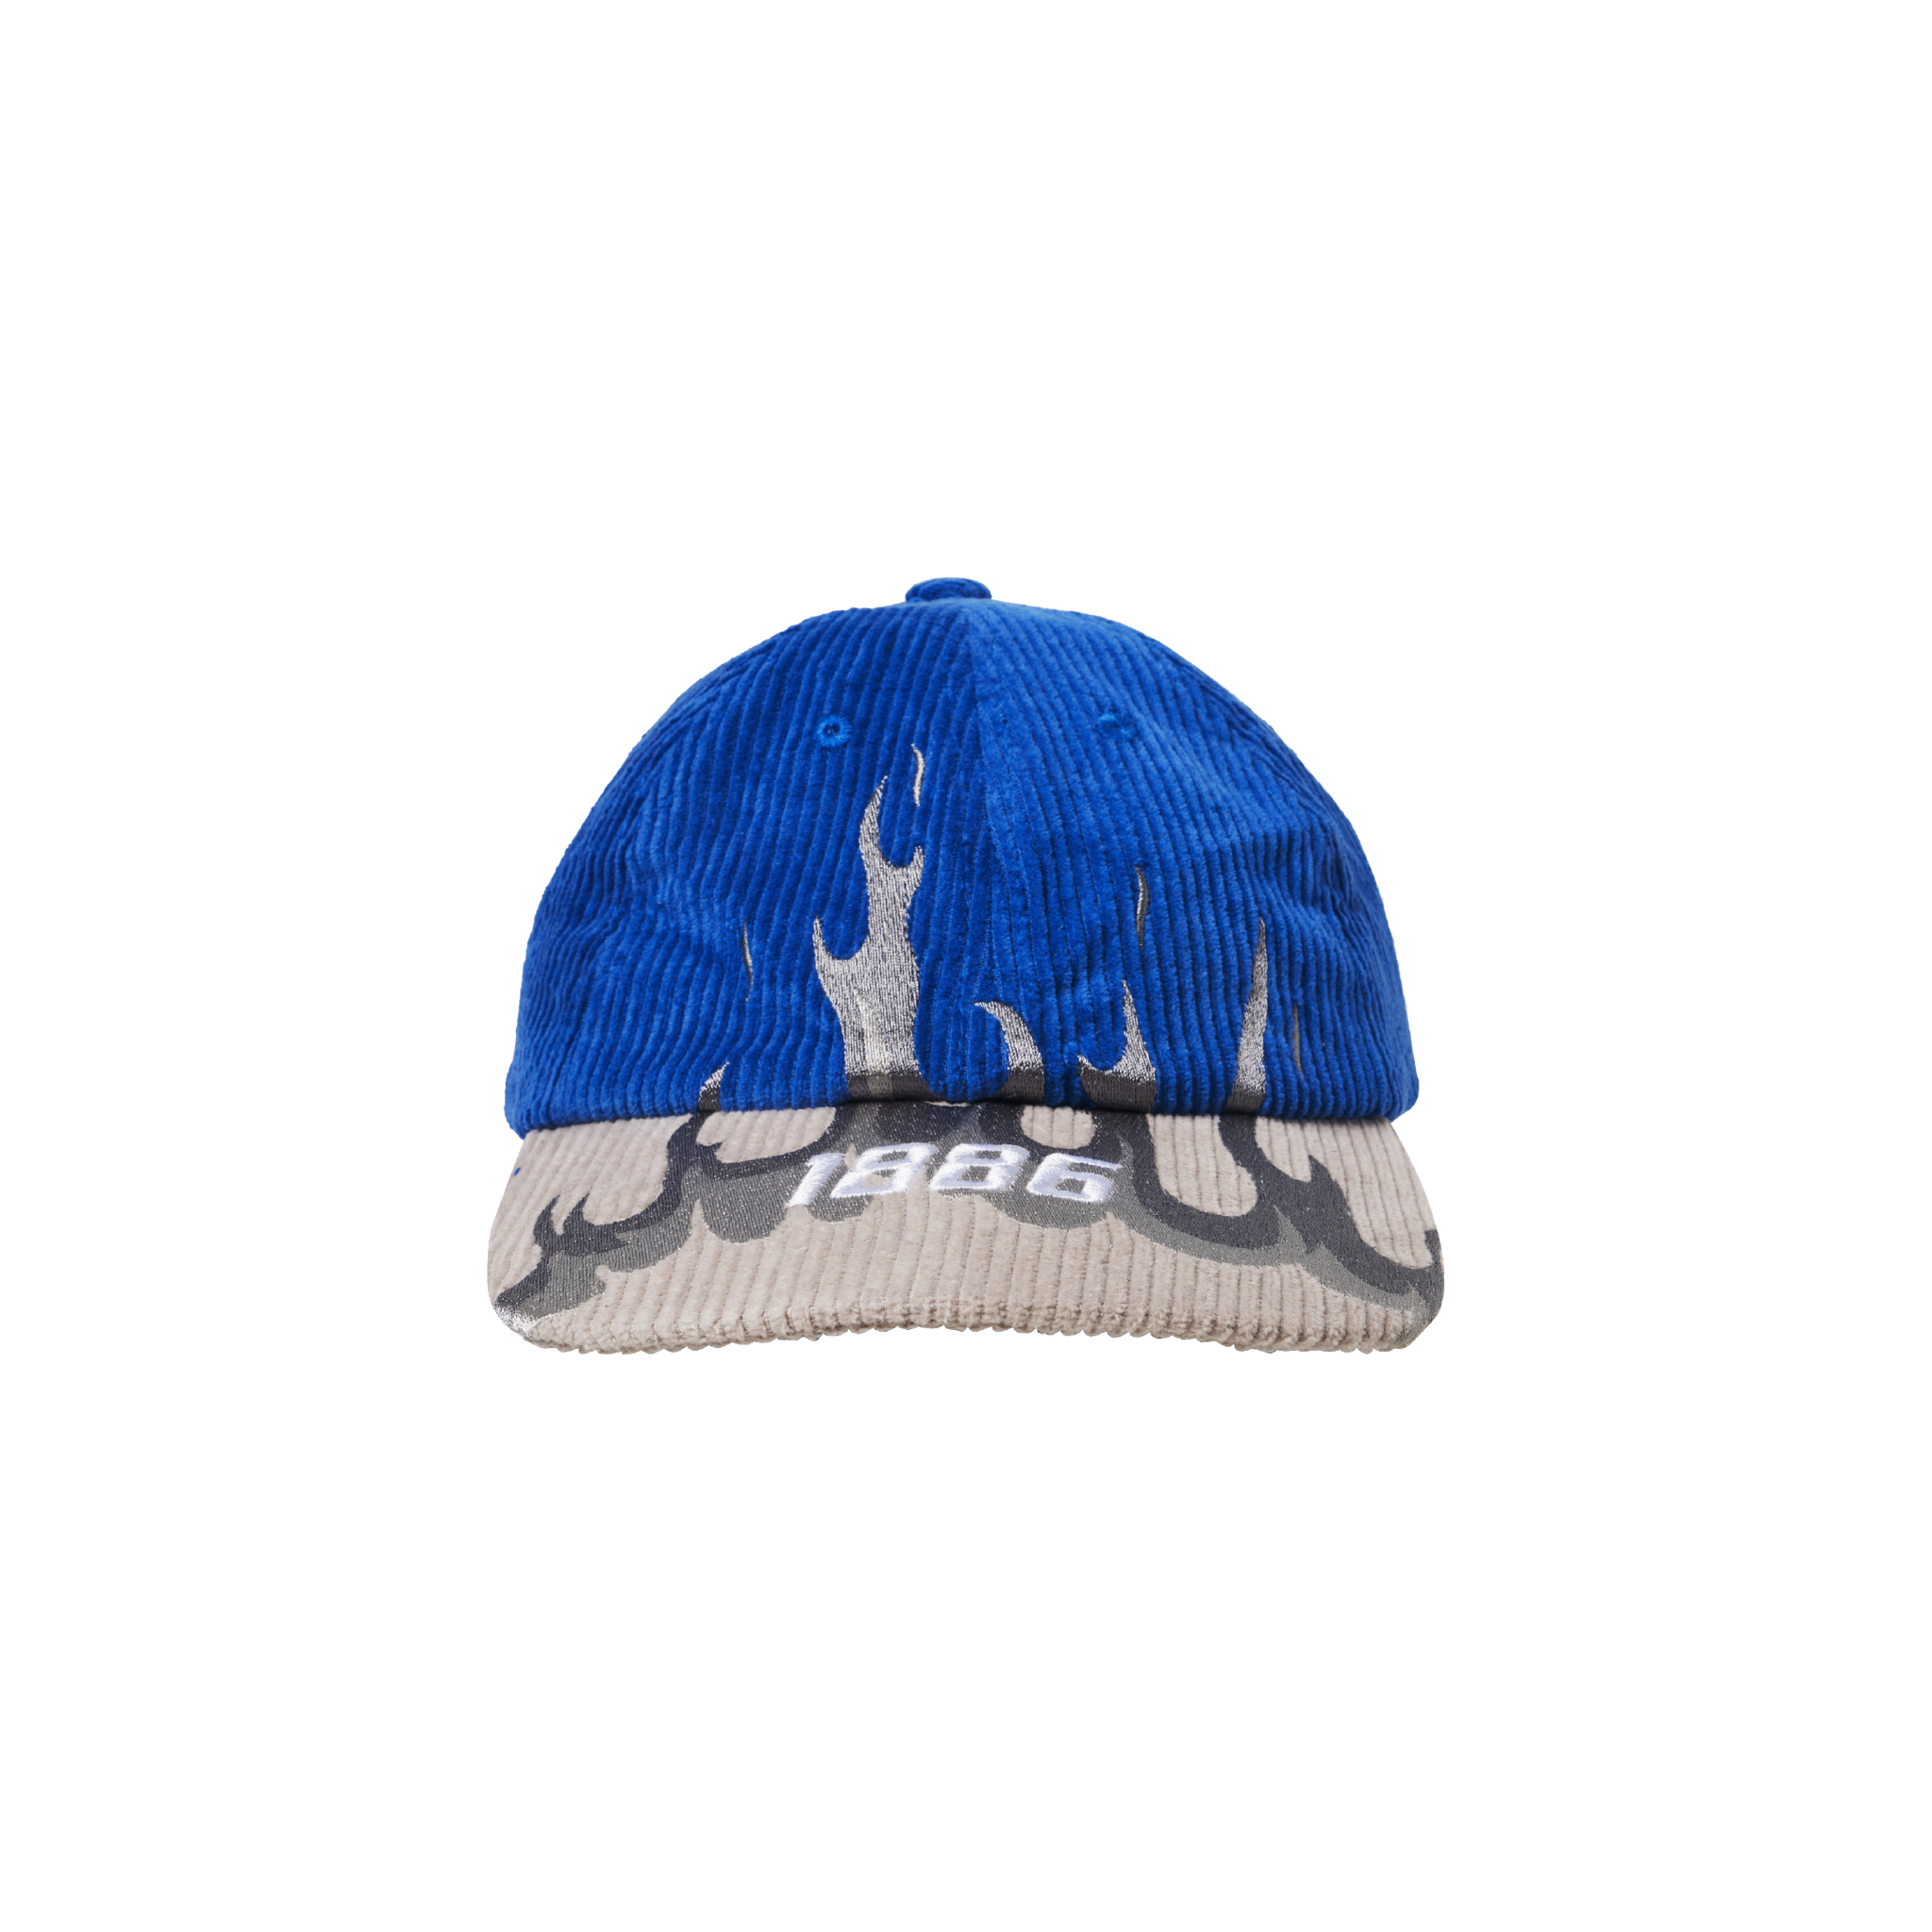 1886 CAP - BLUE & grey